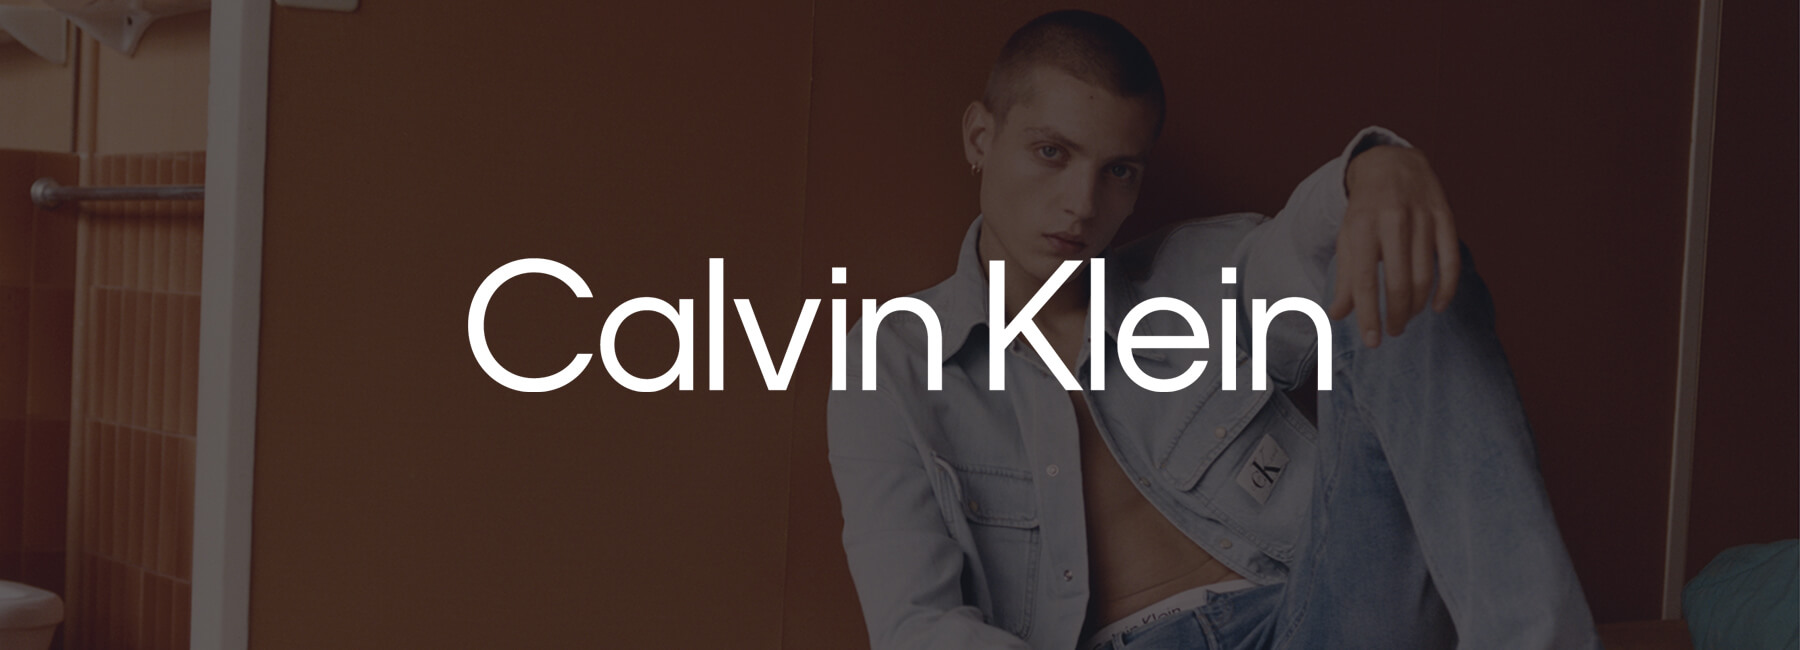 Comment Calvin Klein prend des décisions basées sur les données avec Mopinion